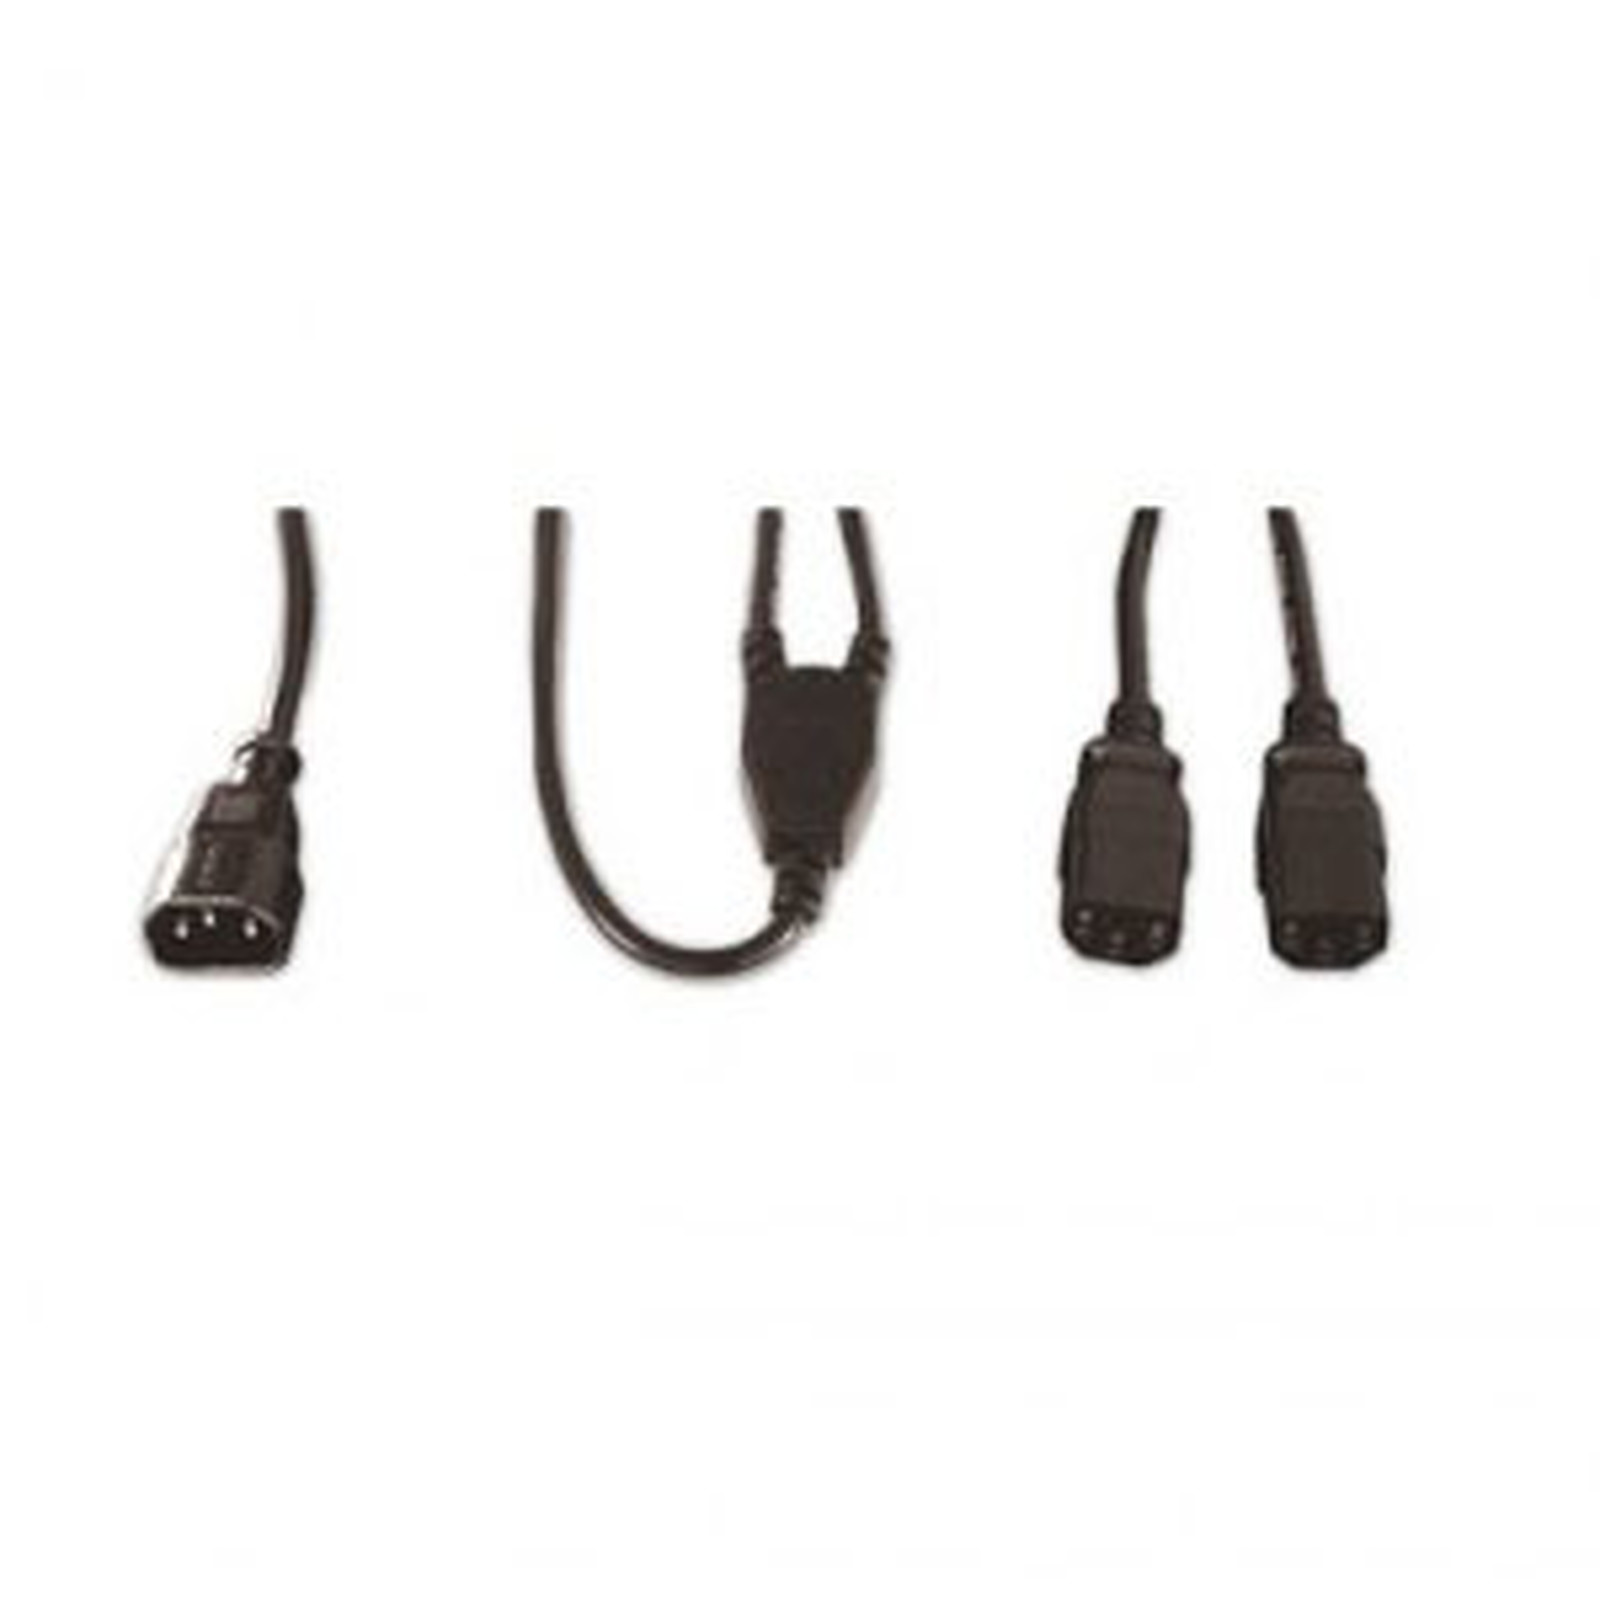 Double rallonge d'alimentation pour PC, moniteur et onduleur (1.8 m) - (coloris noir) - Cable Secteur Generique